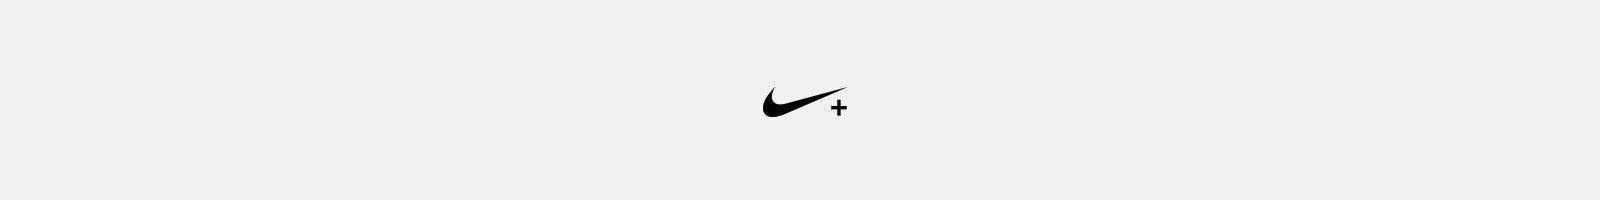 Nike Plus Logo - NIKE+ Apps & Services. Nike.com (HK)